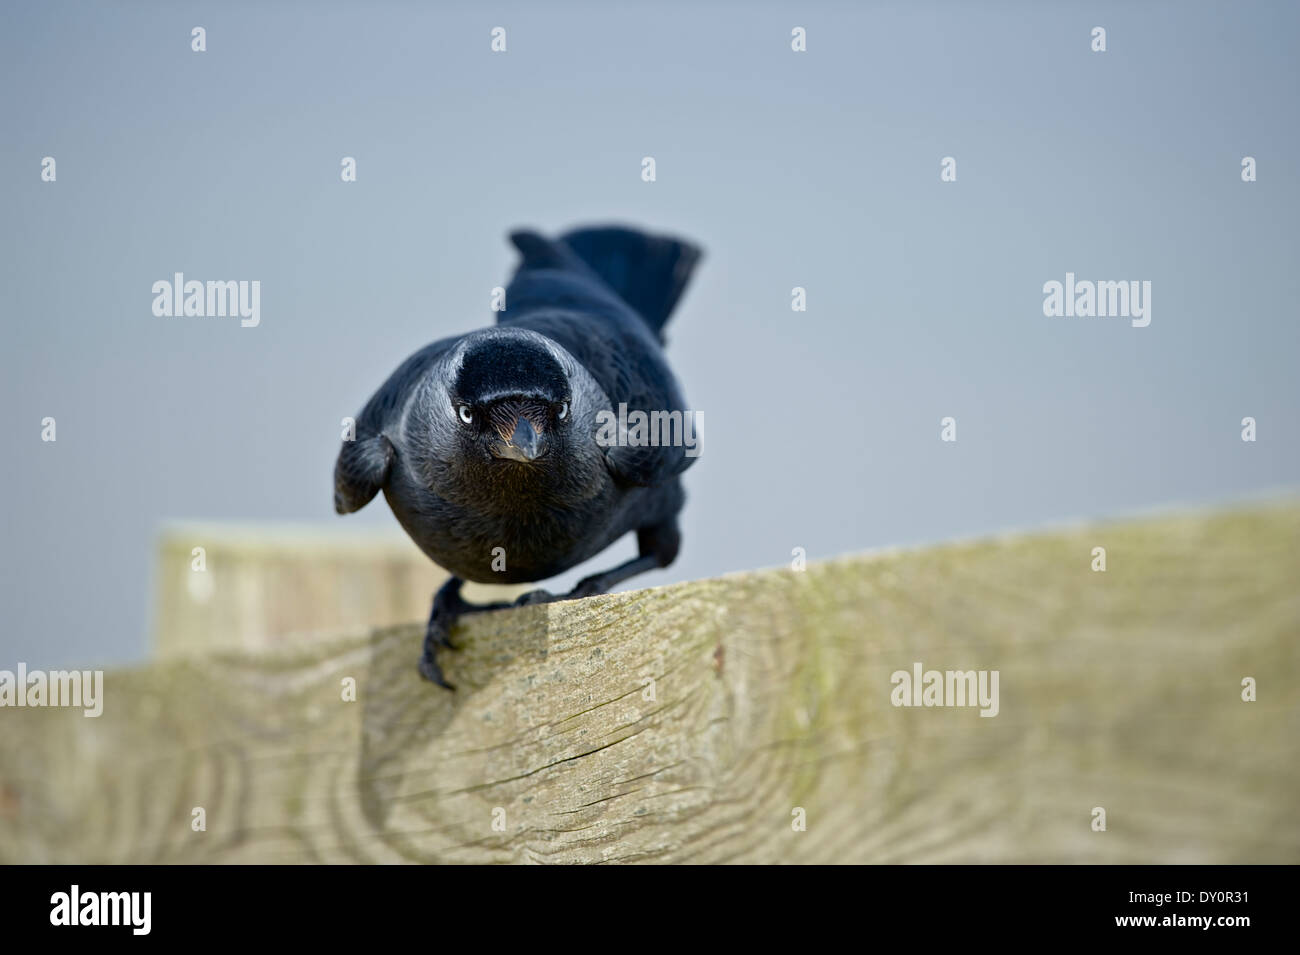 - Un pájaro curioso jackdaw (Corvus monedula) encaramado en una valla, mira de frente a la cámara, hace contacto con los ojos. Foto de stock